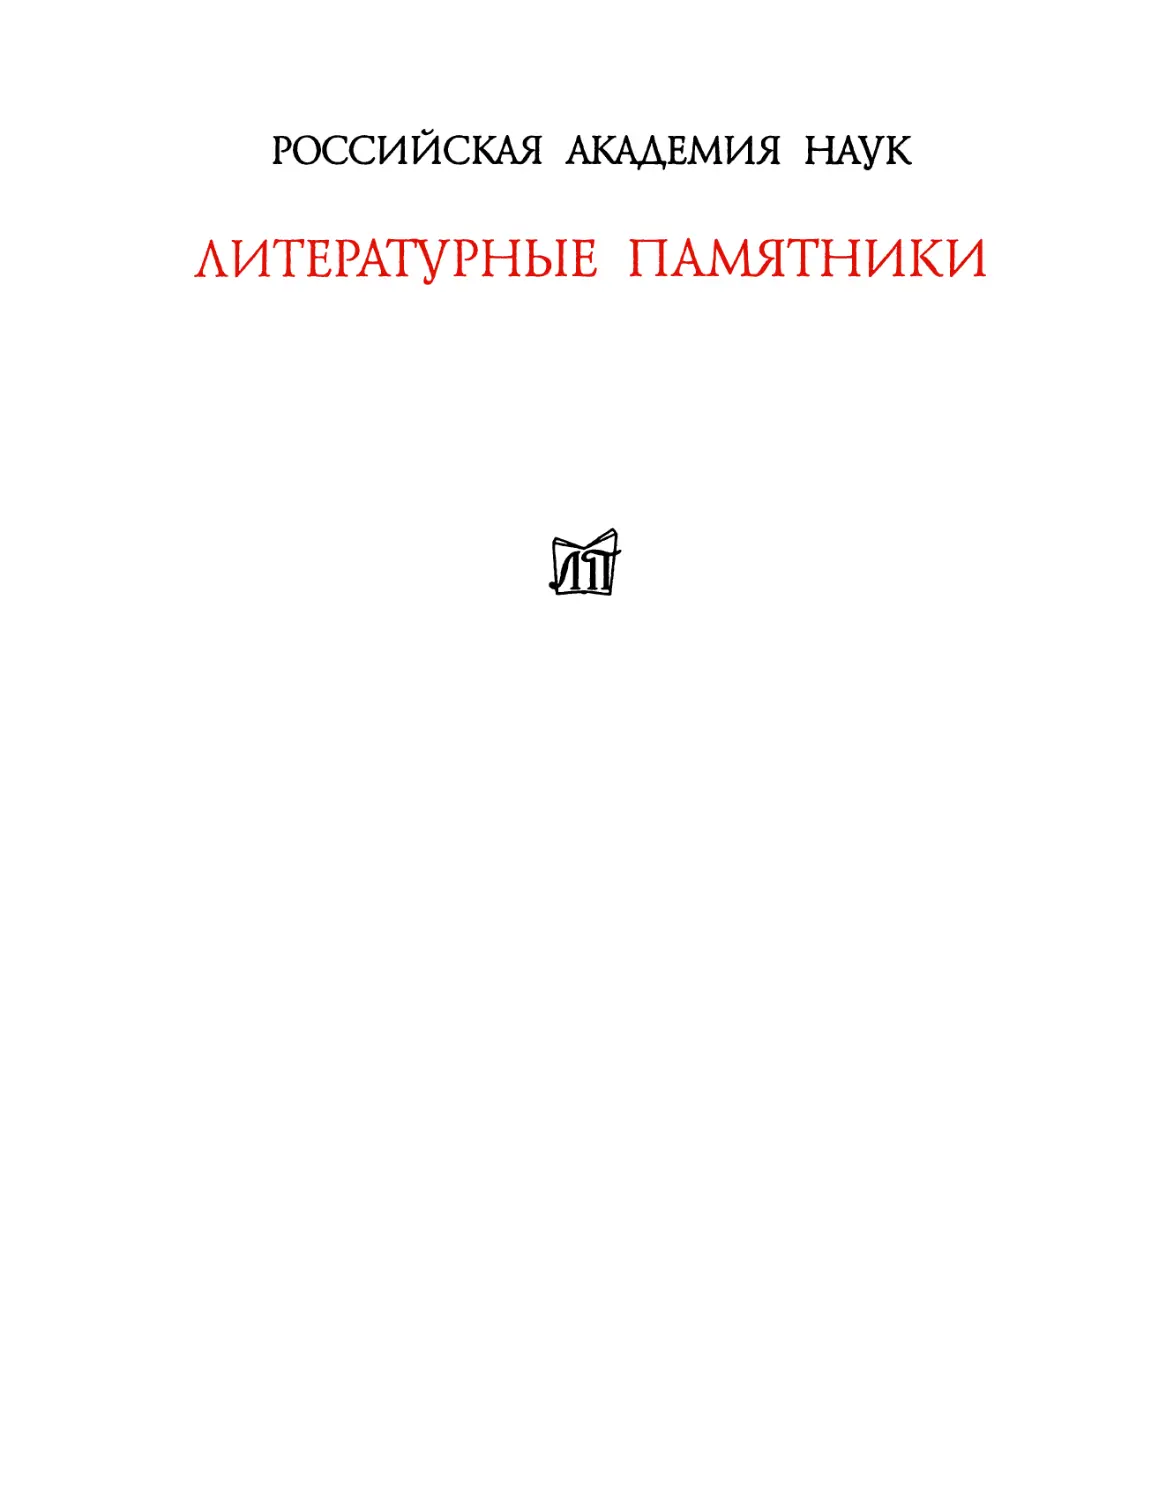 Анненков П.В. Письма к И.С. Тургеневу. Кн.2. 1875-1883 - 2005